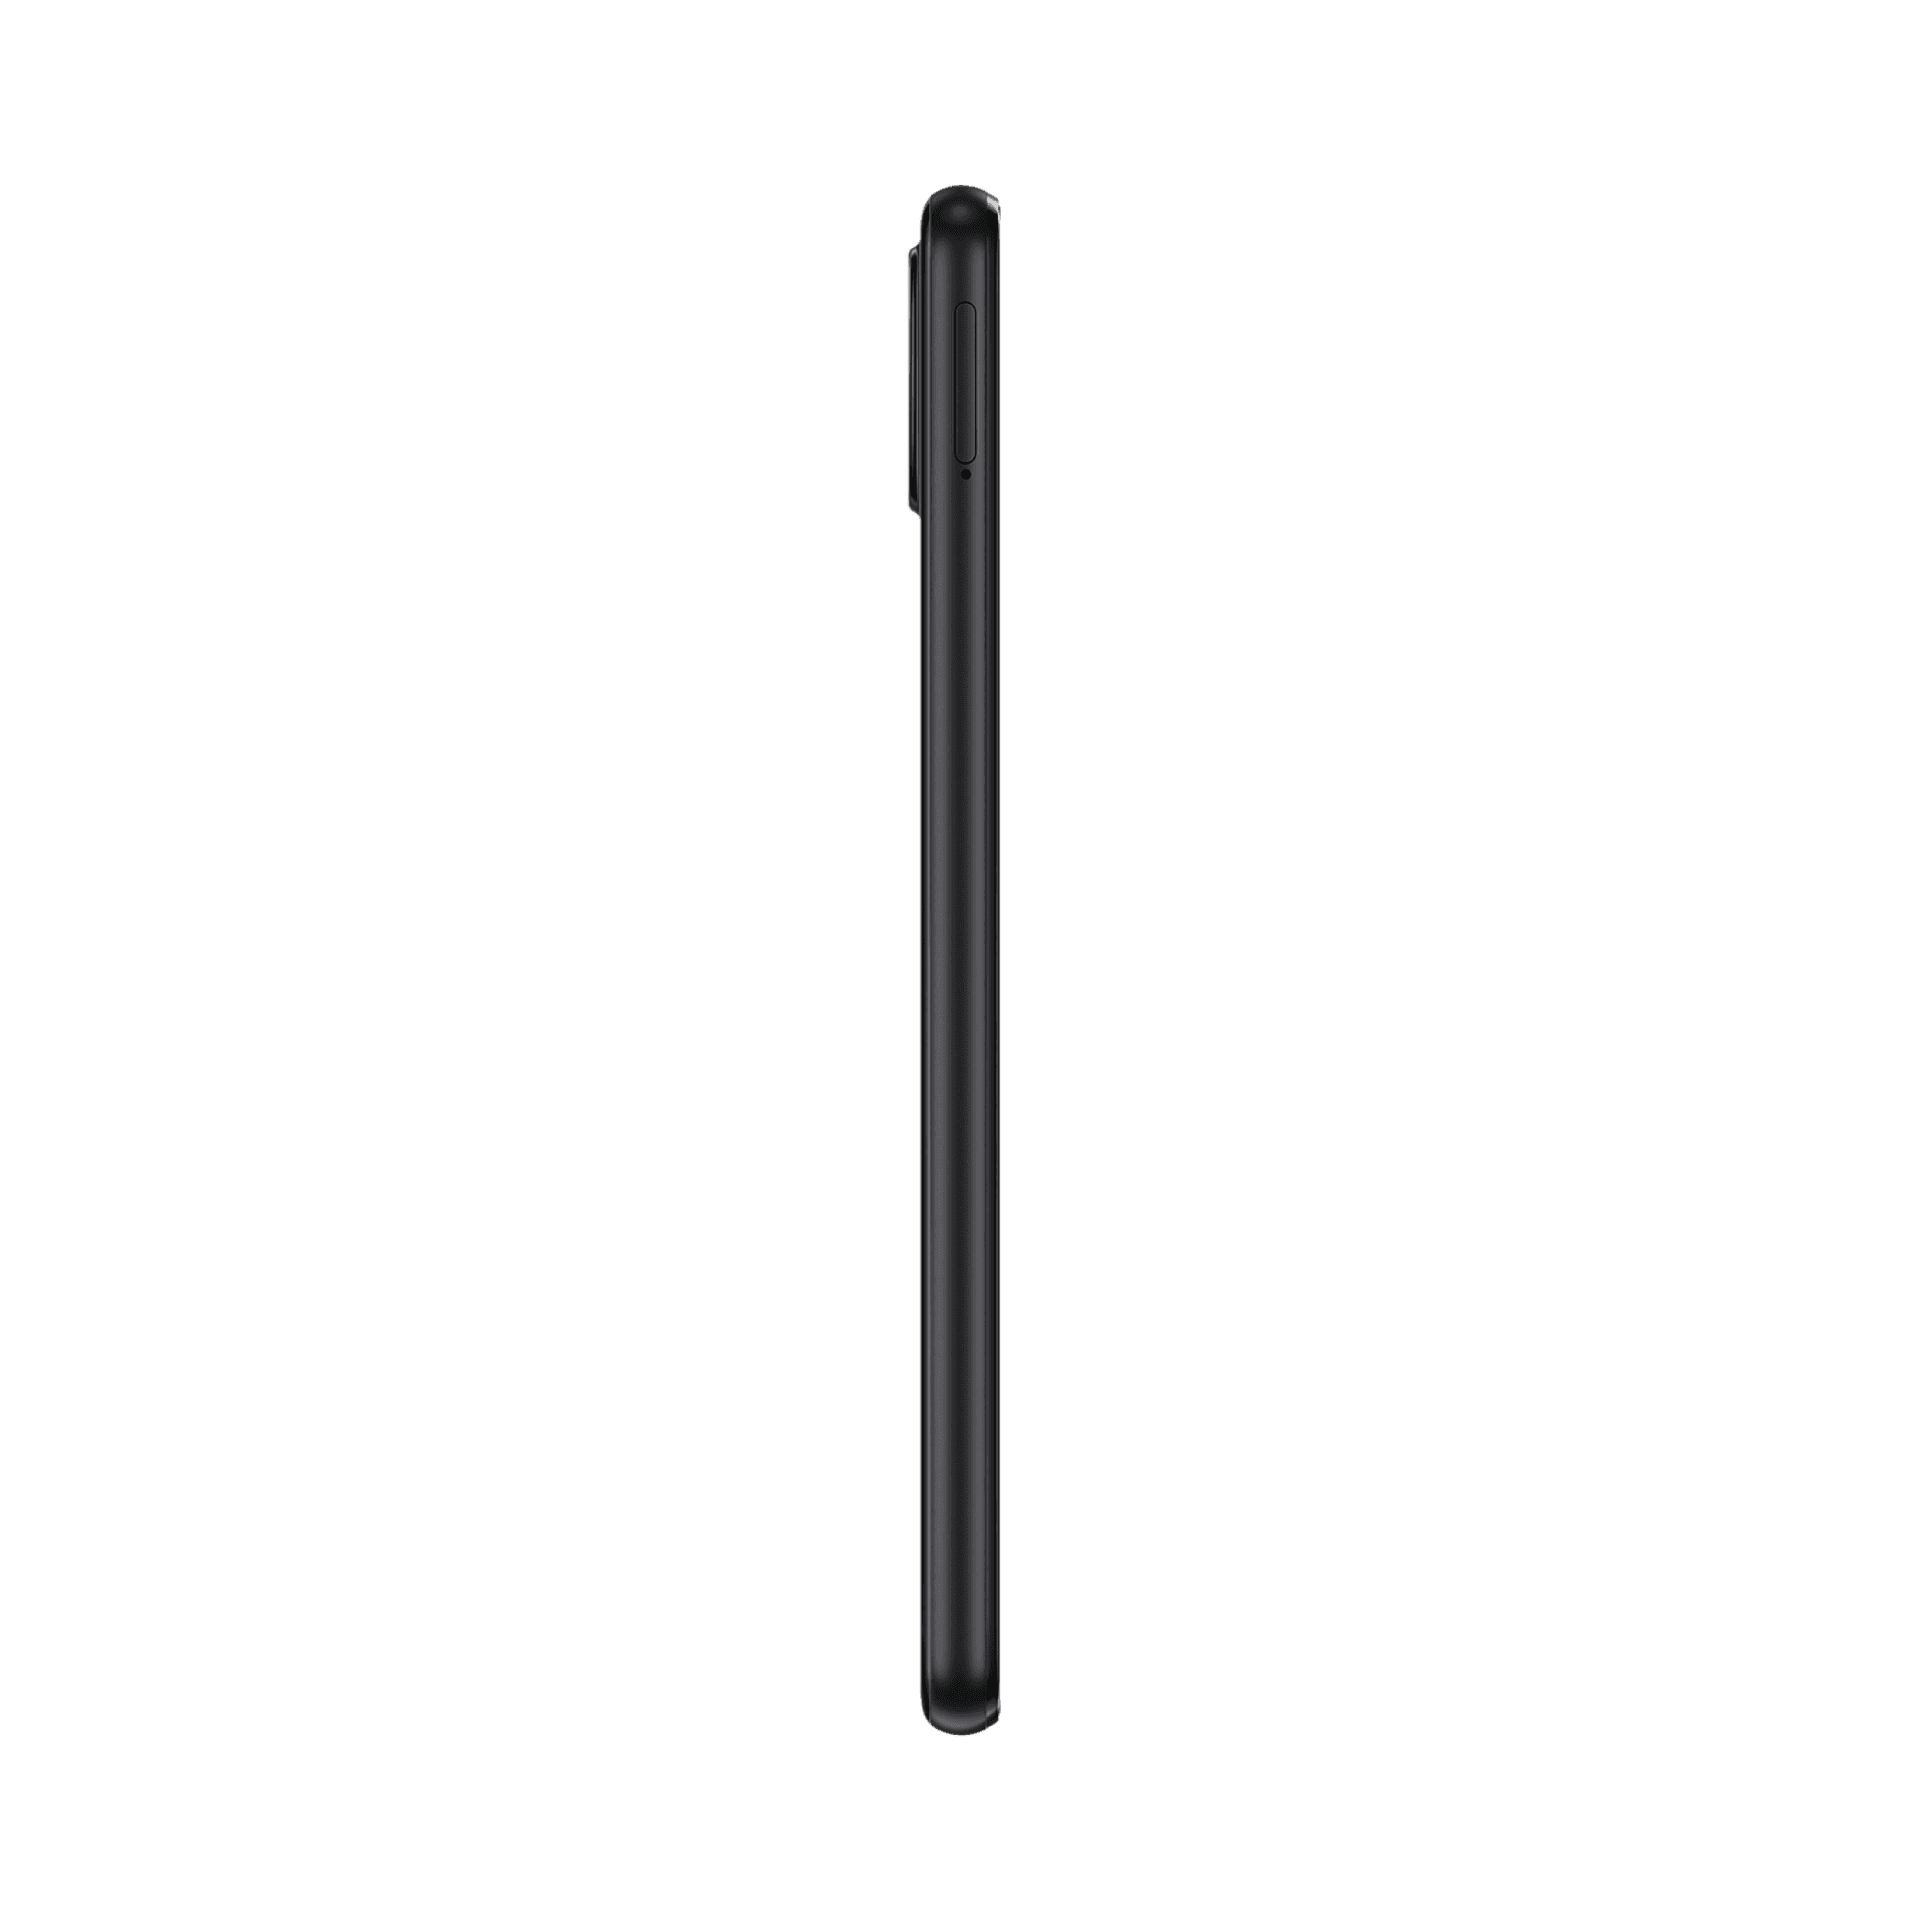 Samsung Galaxy A22 - 128 GB - Siyah